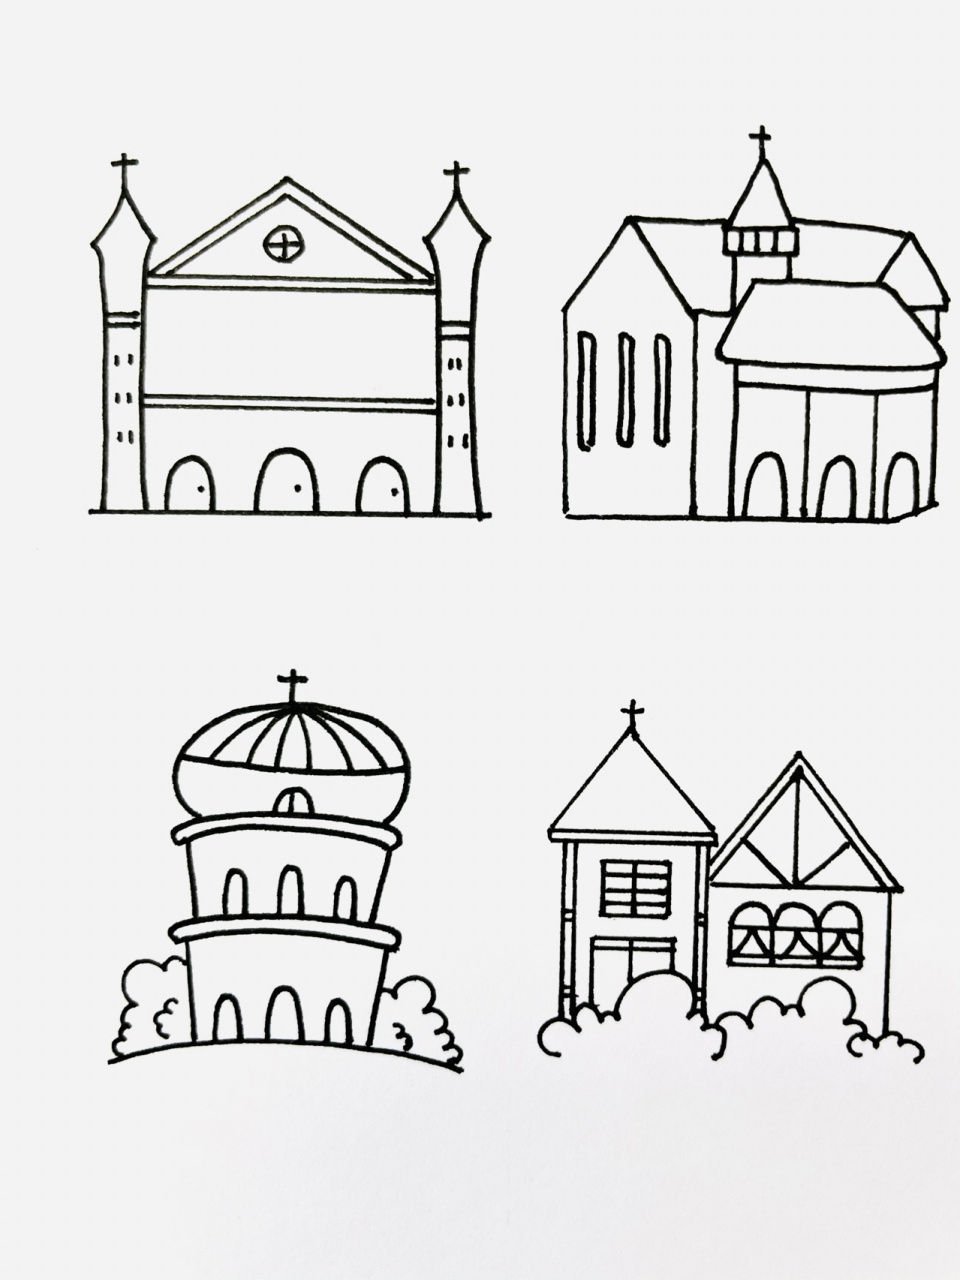 【简笔画】教堂7615 分享一组建筑类简笔画—教堂 还喜欢什么